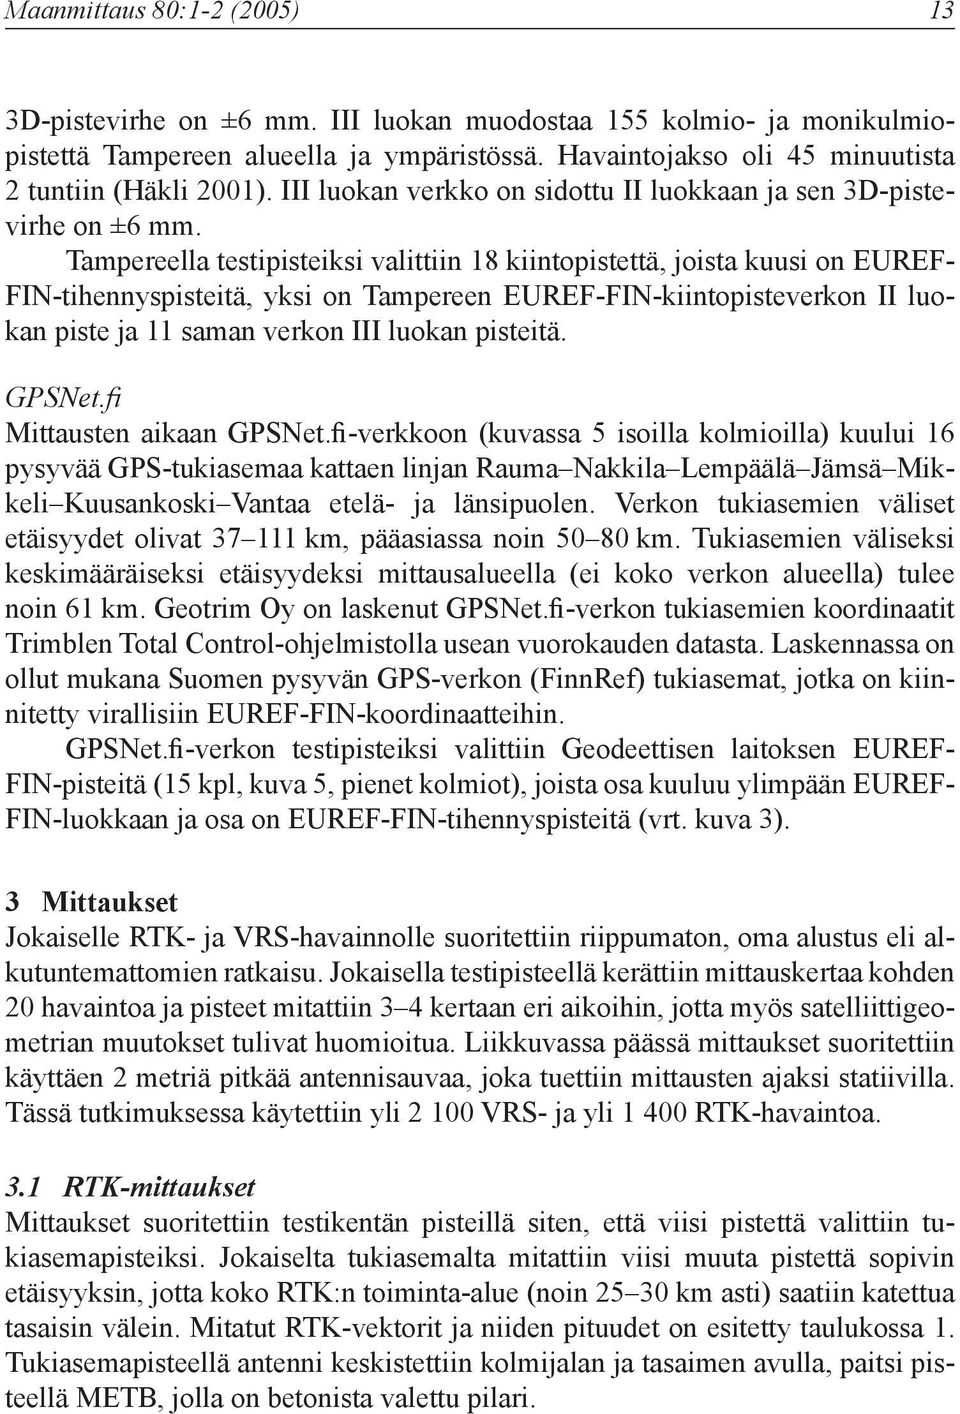 Tampereella testipisteiksi valittiin 18 kiintopistettä, joista kuusi on EUREF- FIN-tihennyspisteitä, yksi on Tampereen EUREF-FIN-kiintopisteverkon II luokan piste ja 11 saman verkon III luokan